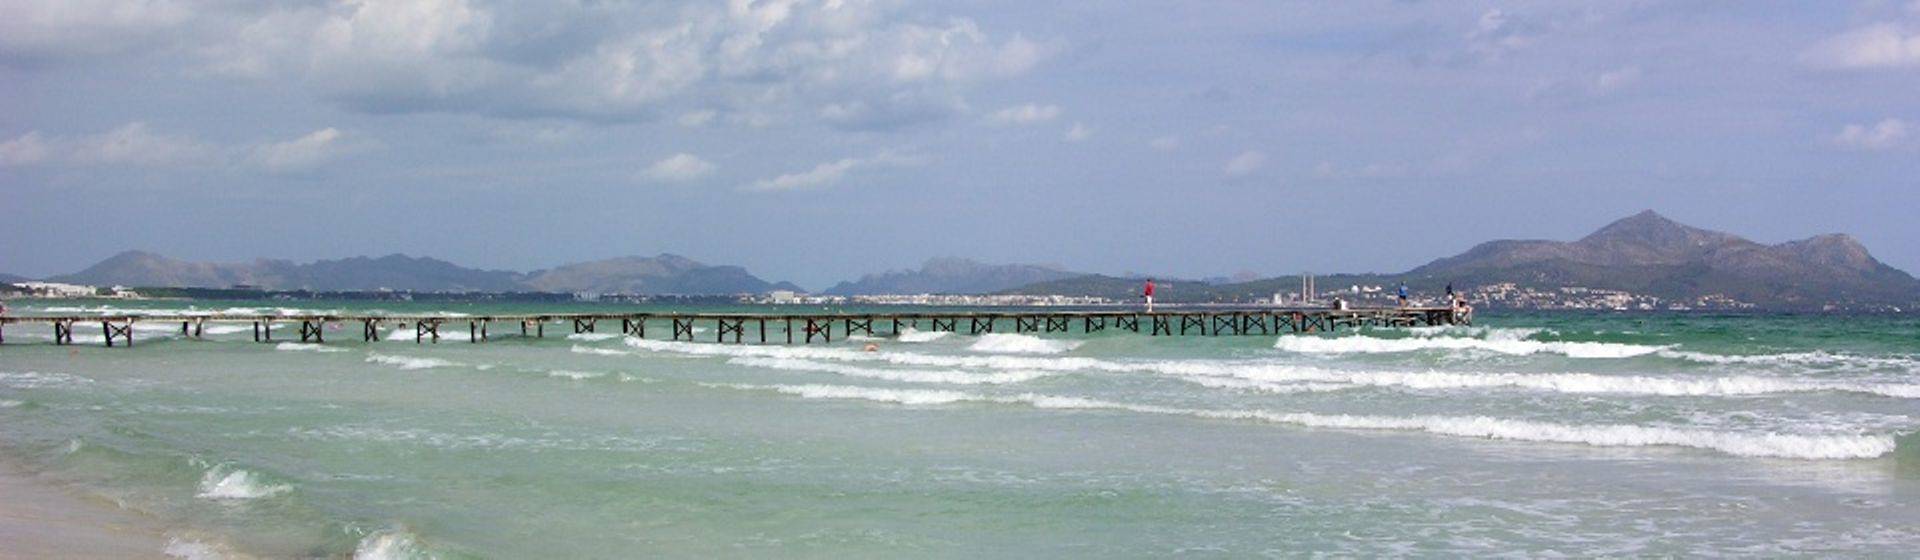 Holidays to Playa De Muro Image